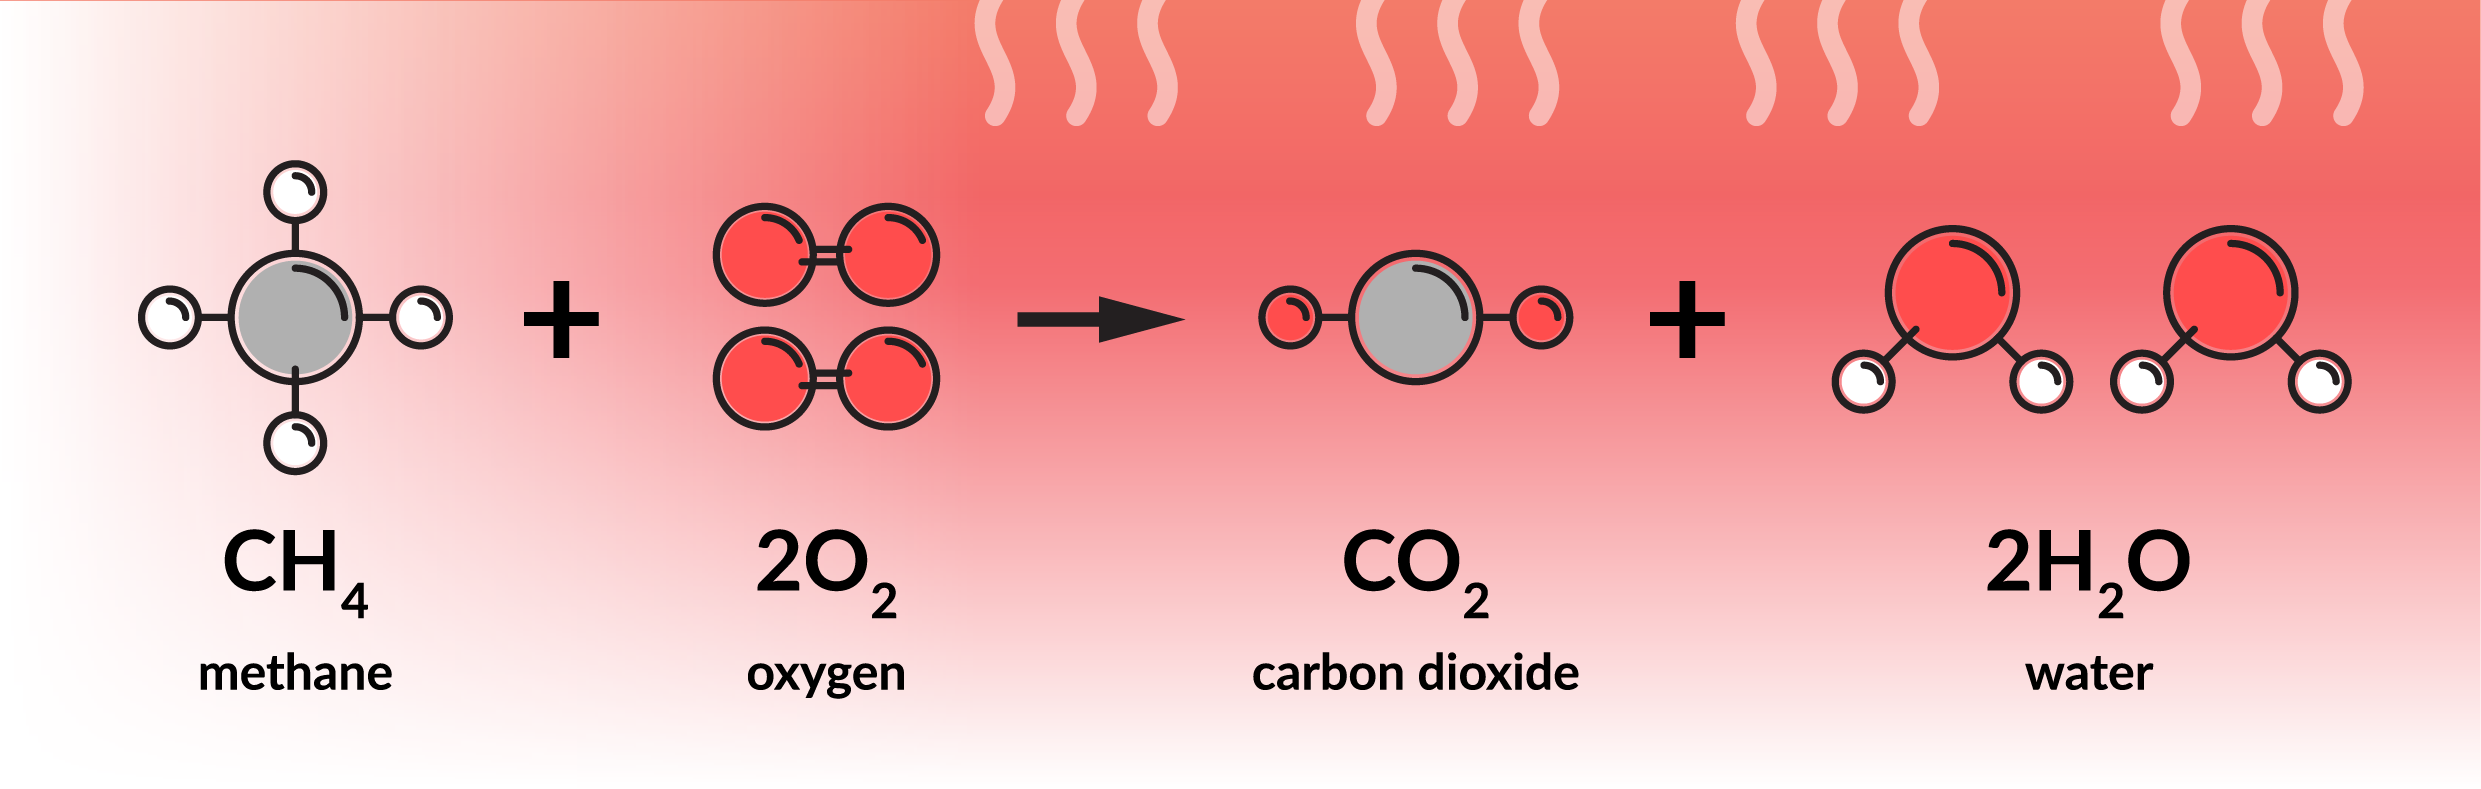 Comment le contrôle de la combustion permet-il d'assainir l'air ?